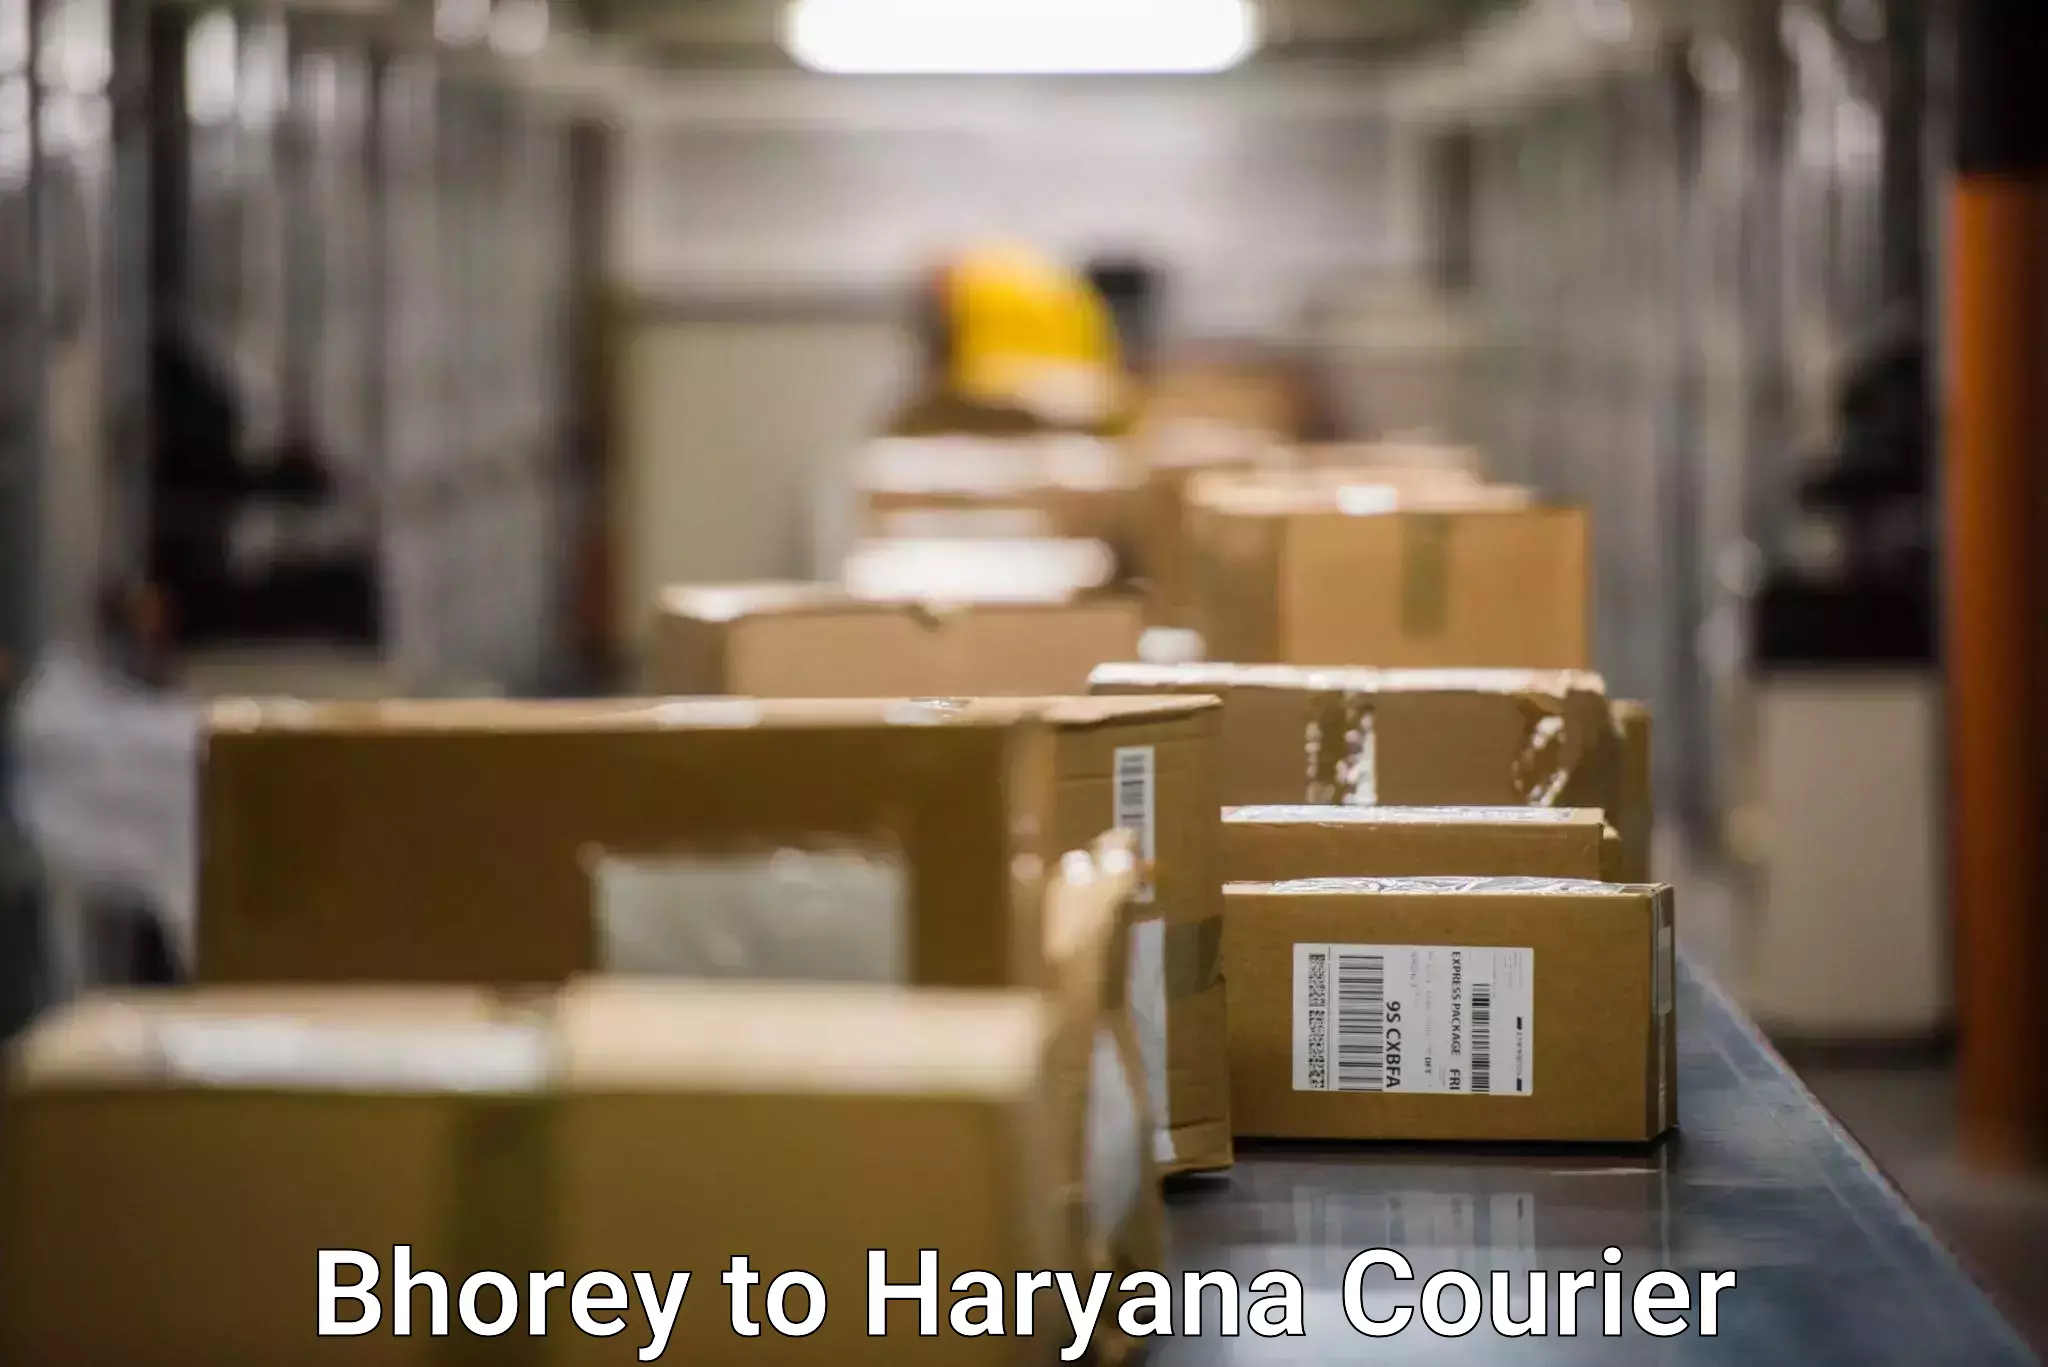 Fragile item shipping Bhorey to Gurgaon